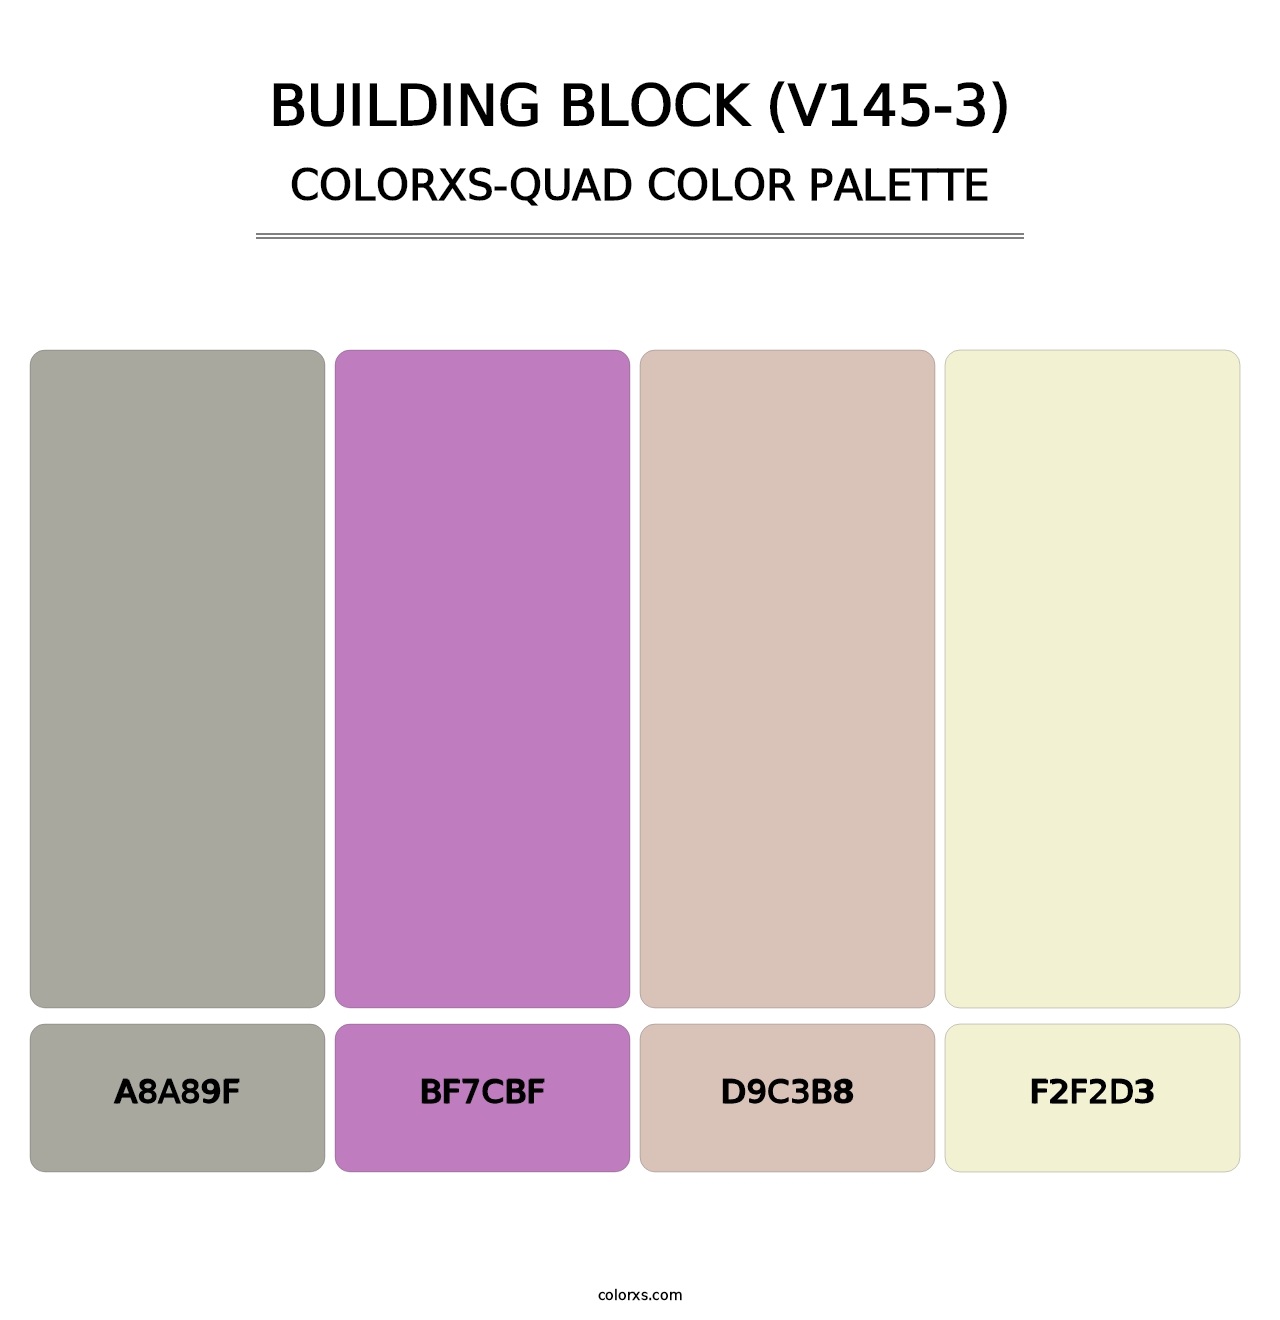 Building Block (V145-3) - Colorxs Quad Palette